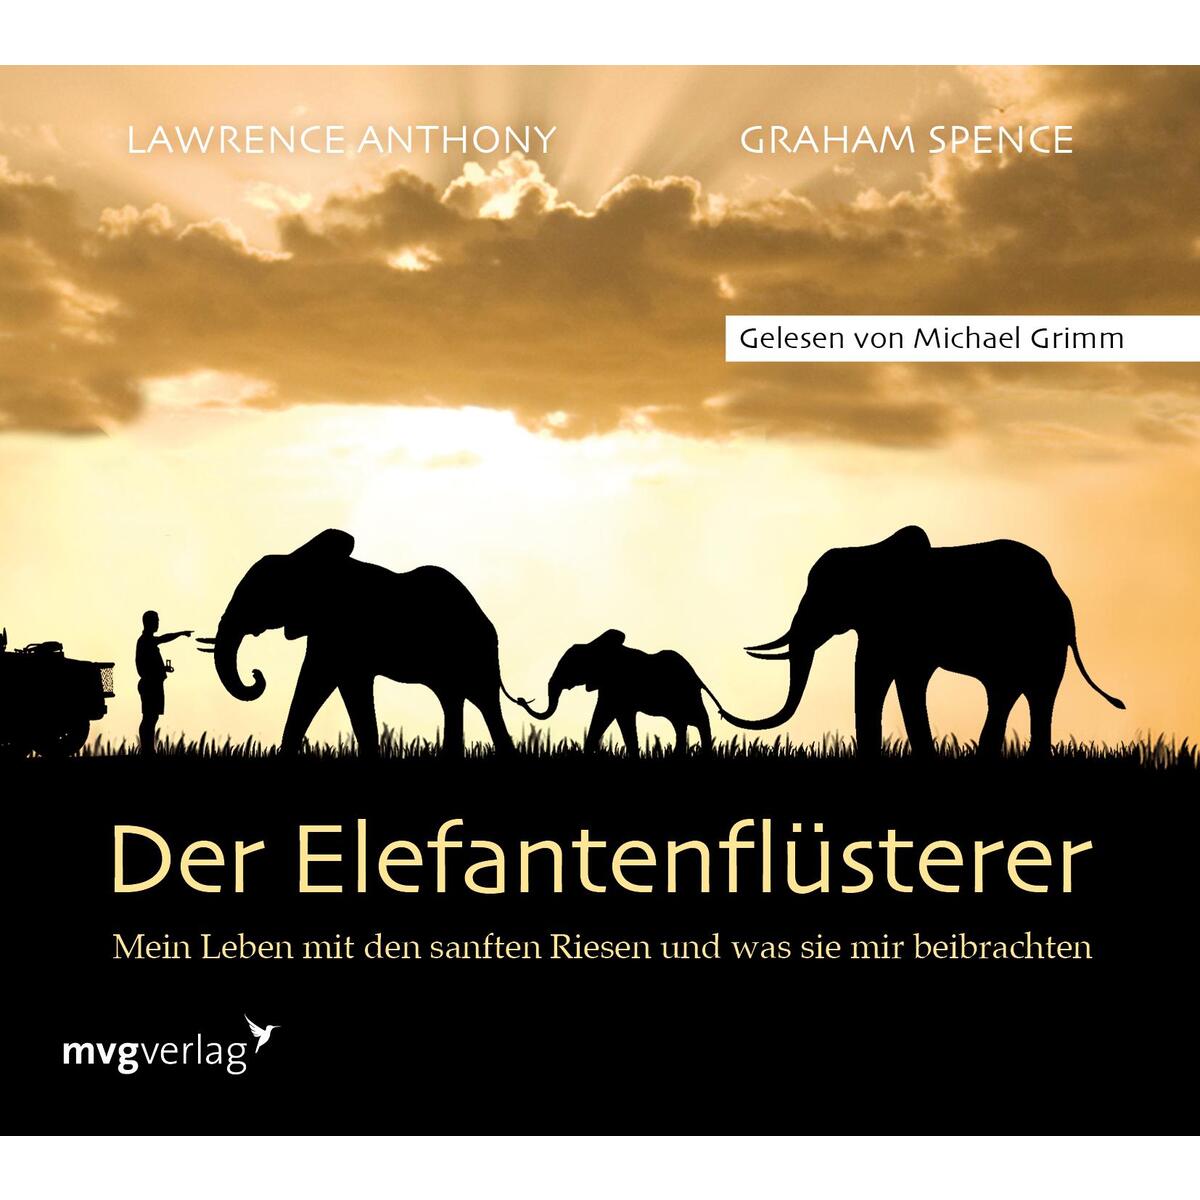 Der Elefantenflüsterer von Audio Verlag München